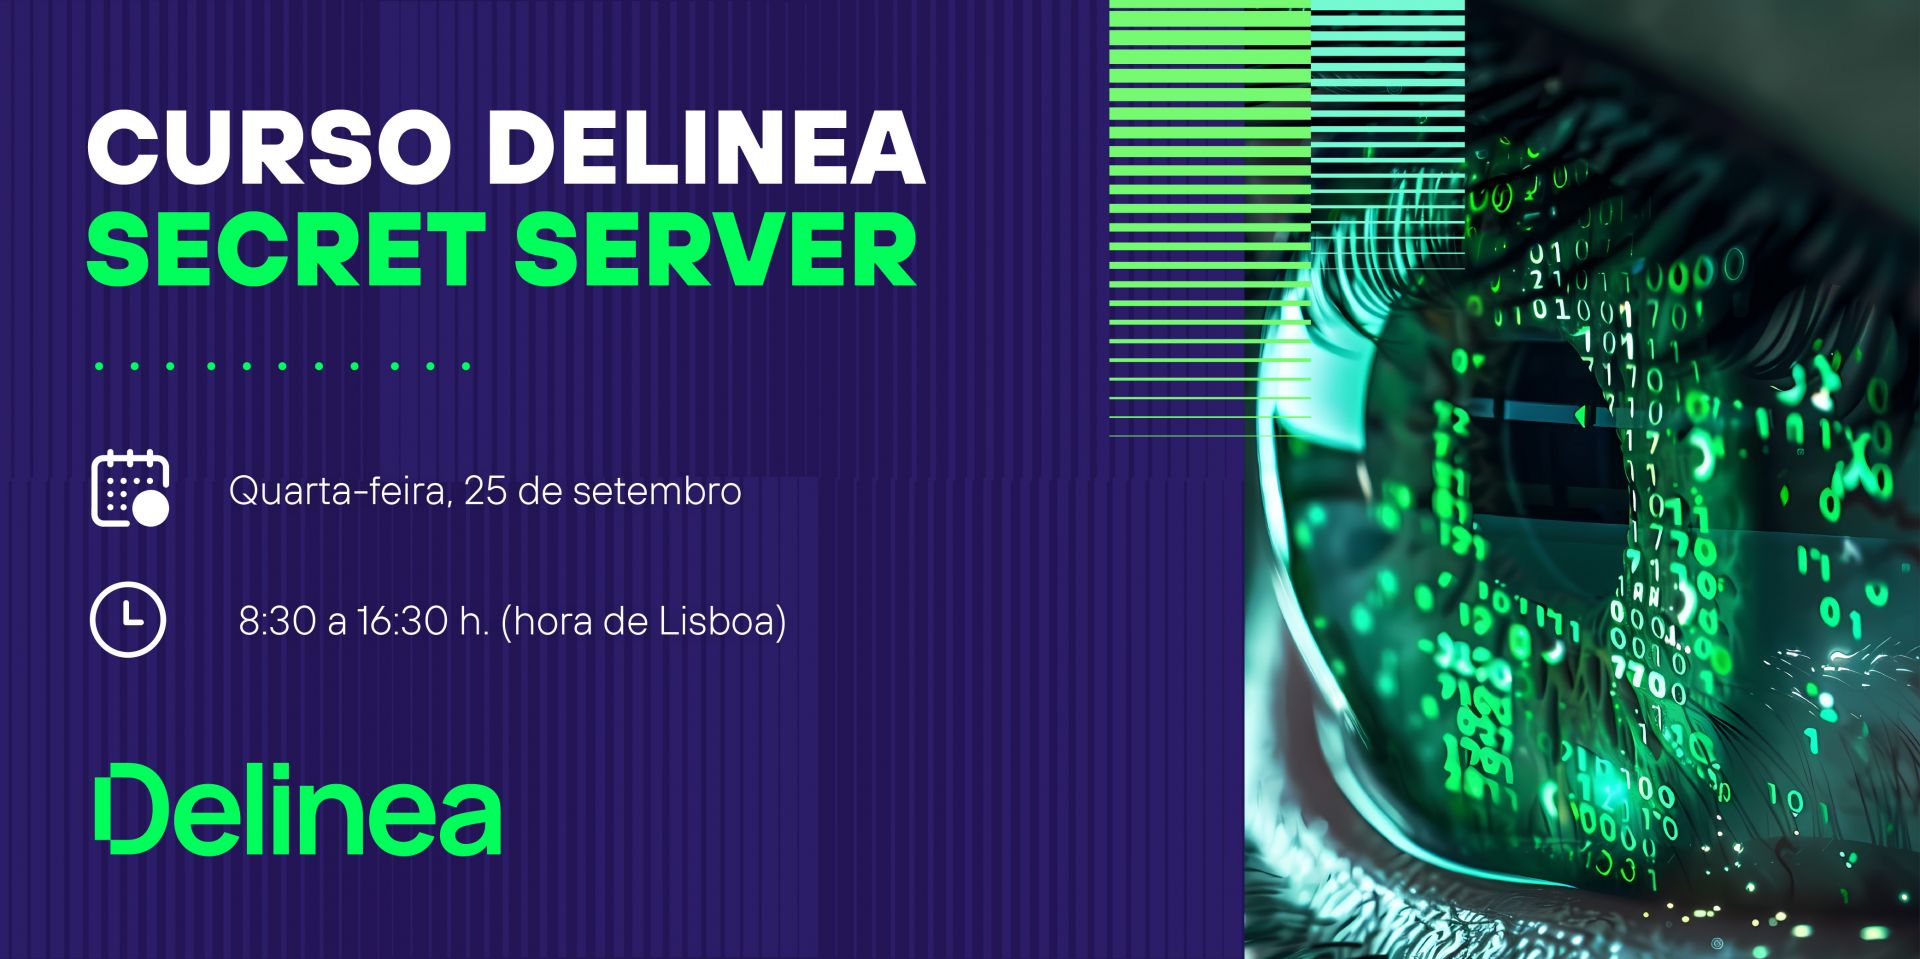 Curso Delinea Secret Server